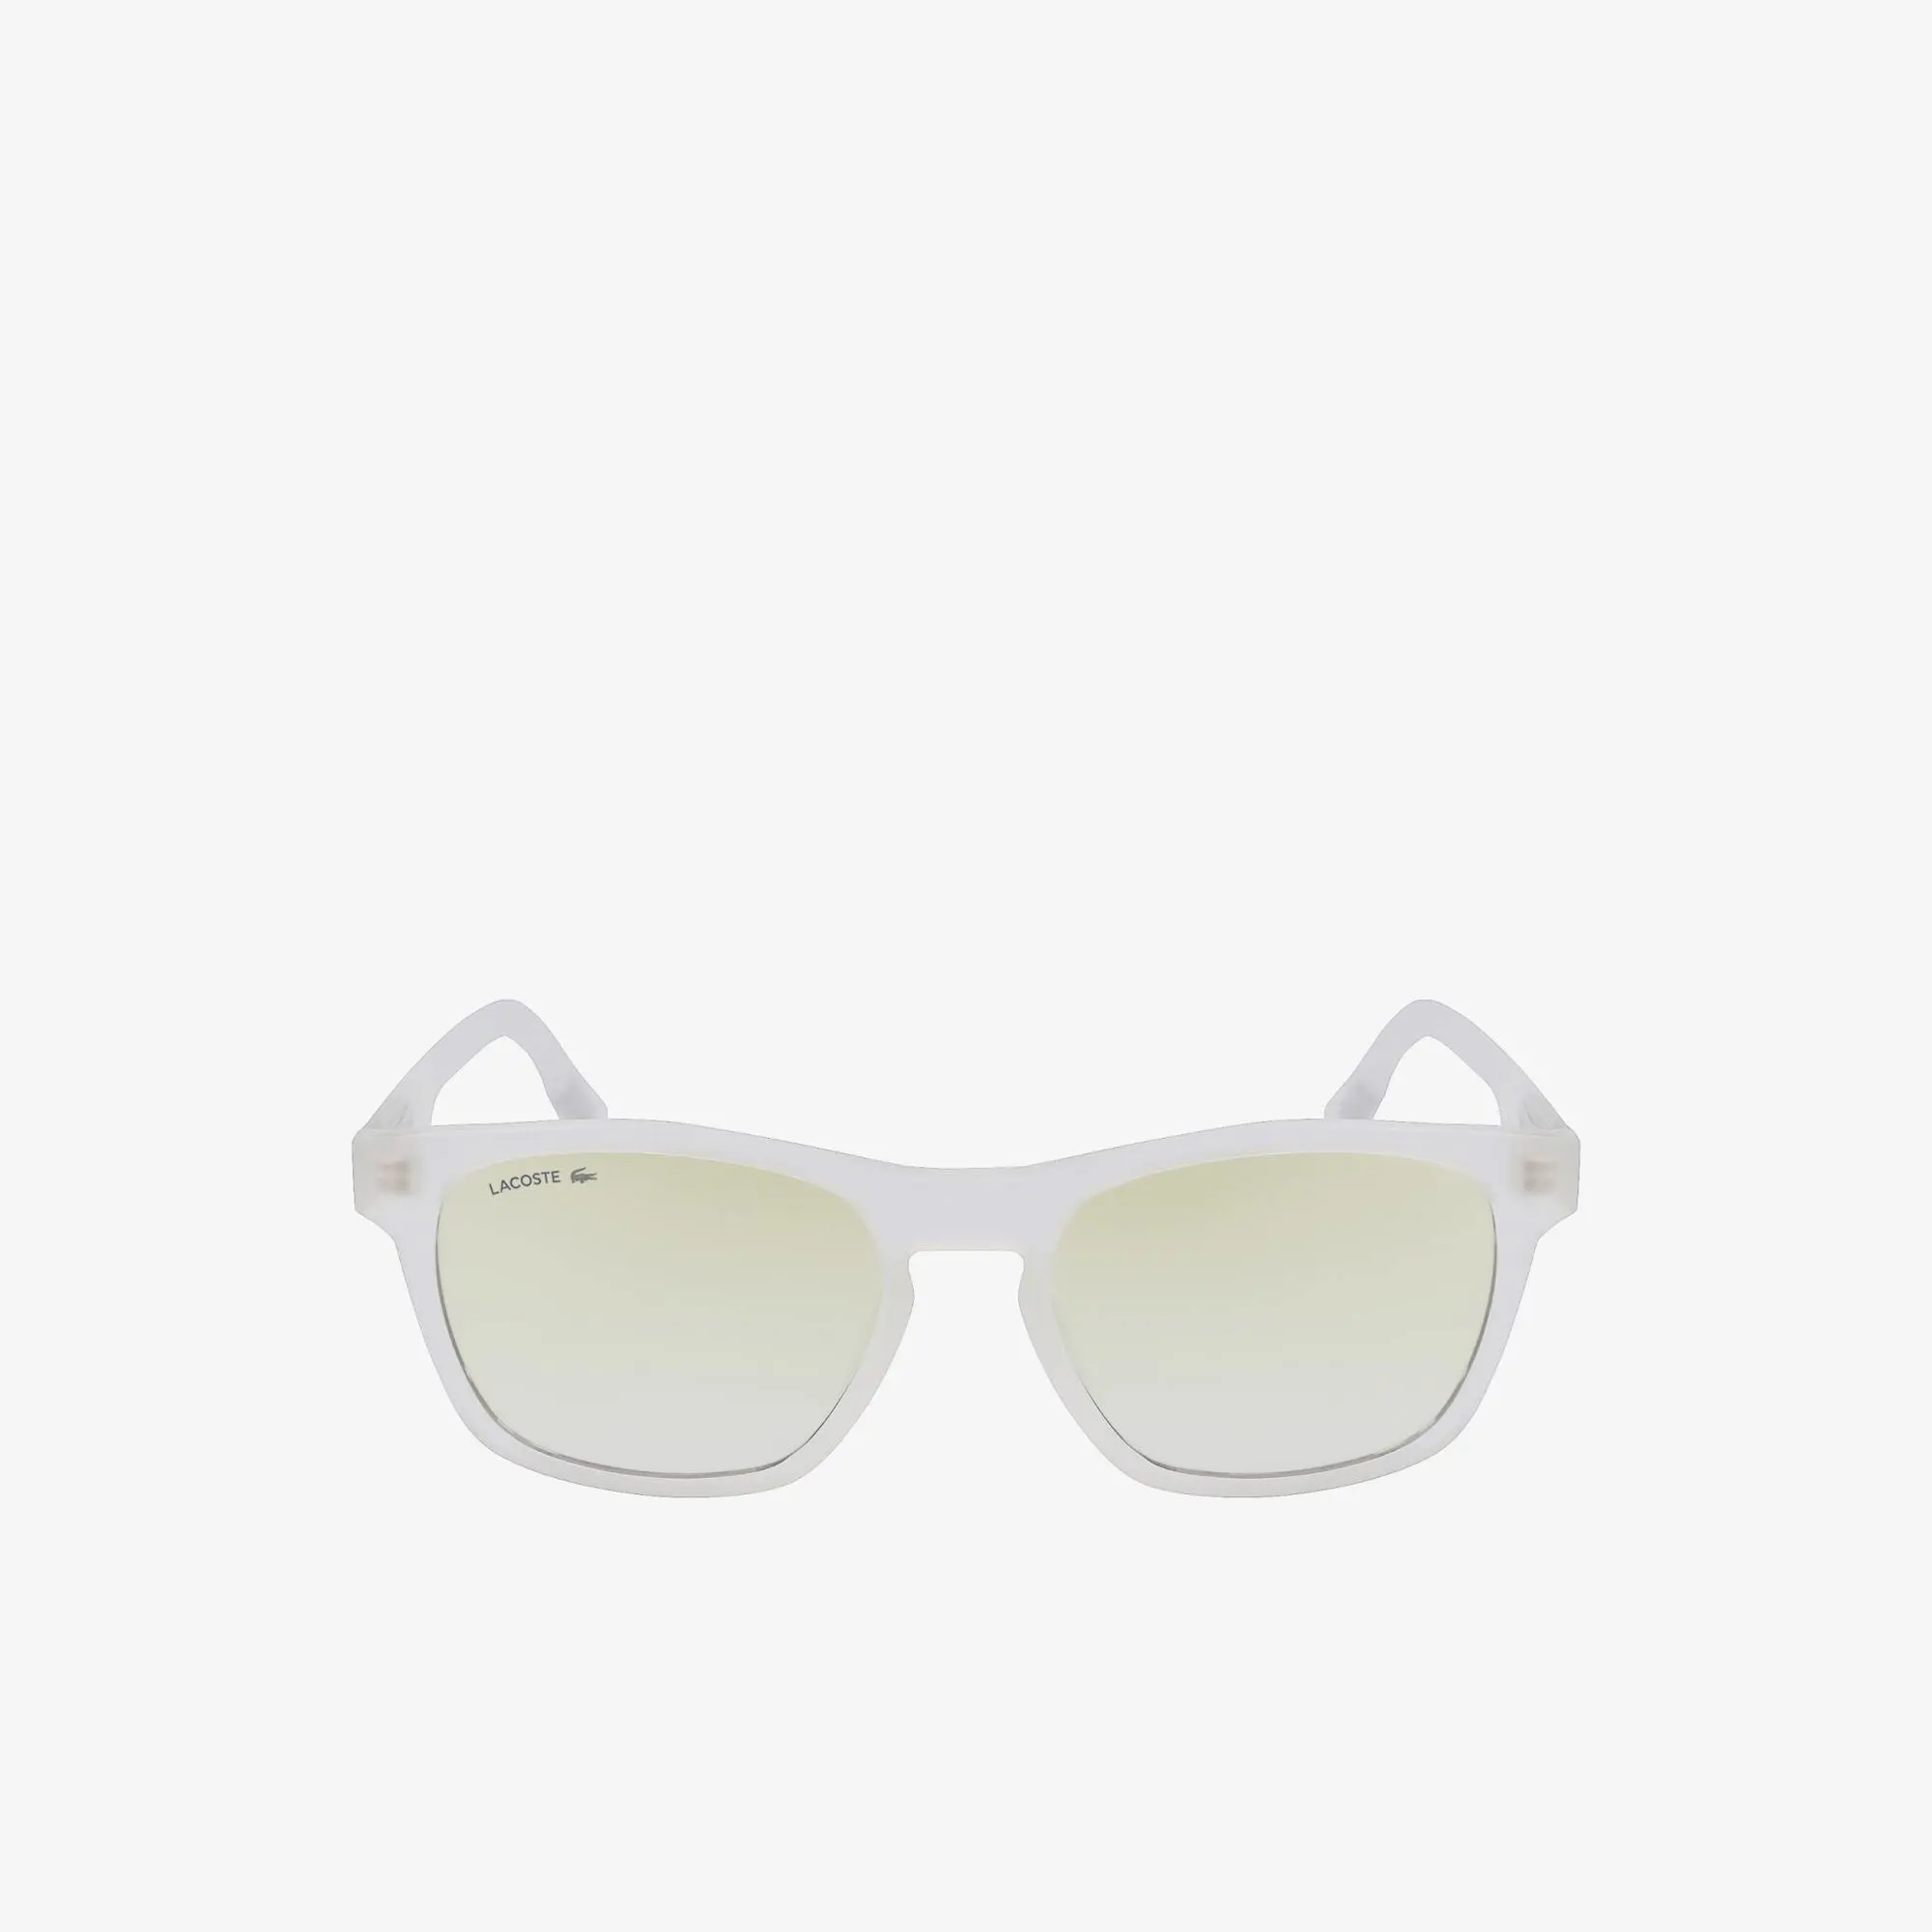 Lacoste Men’s Active Sunglasses. 2